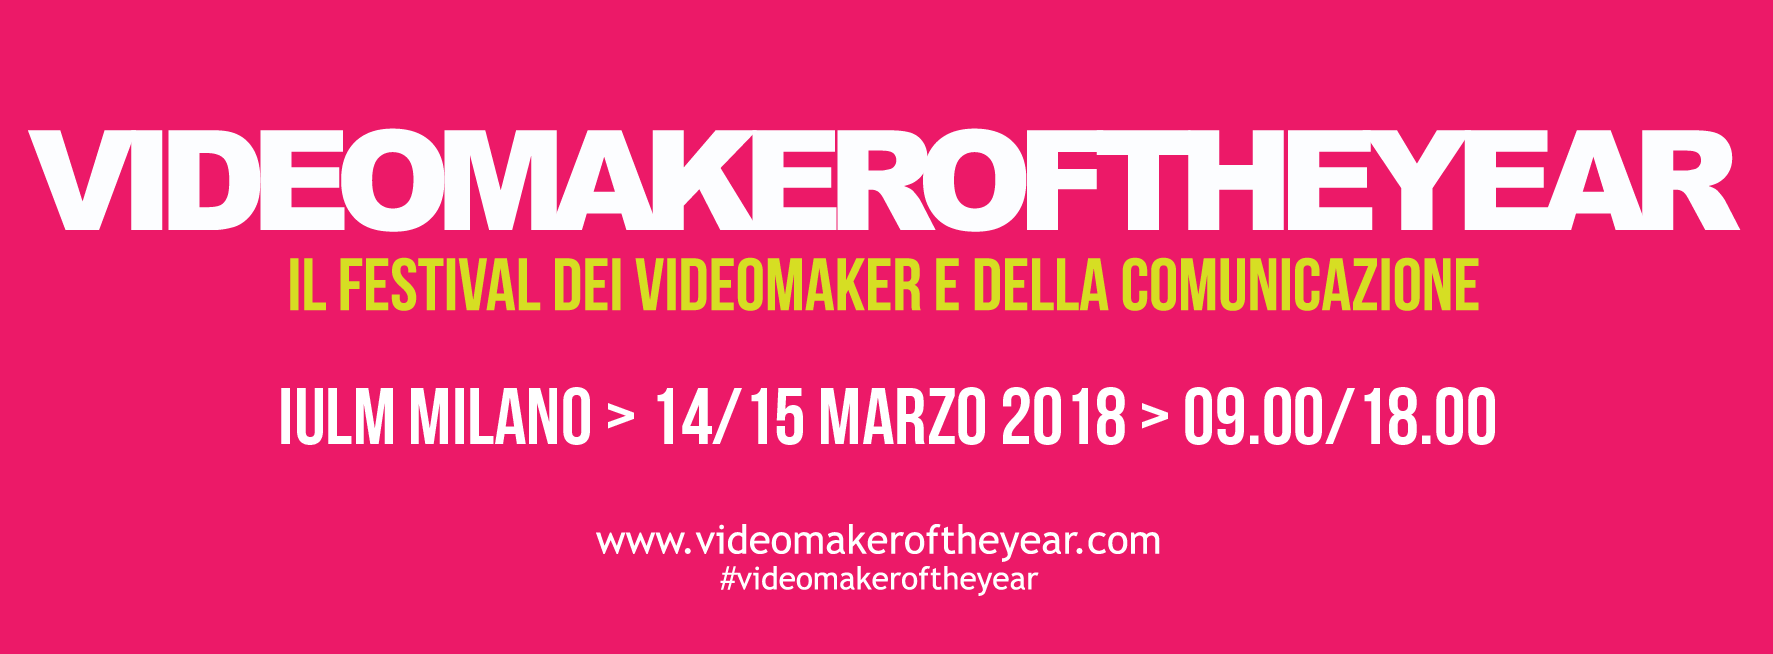 Videomaker of the Year: il primo evento in Italia dedicato ai Videomaker 